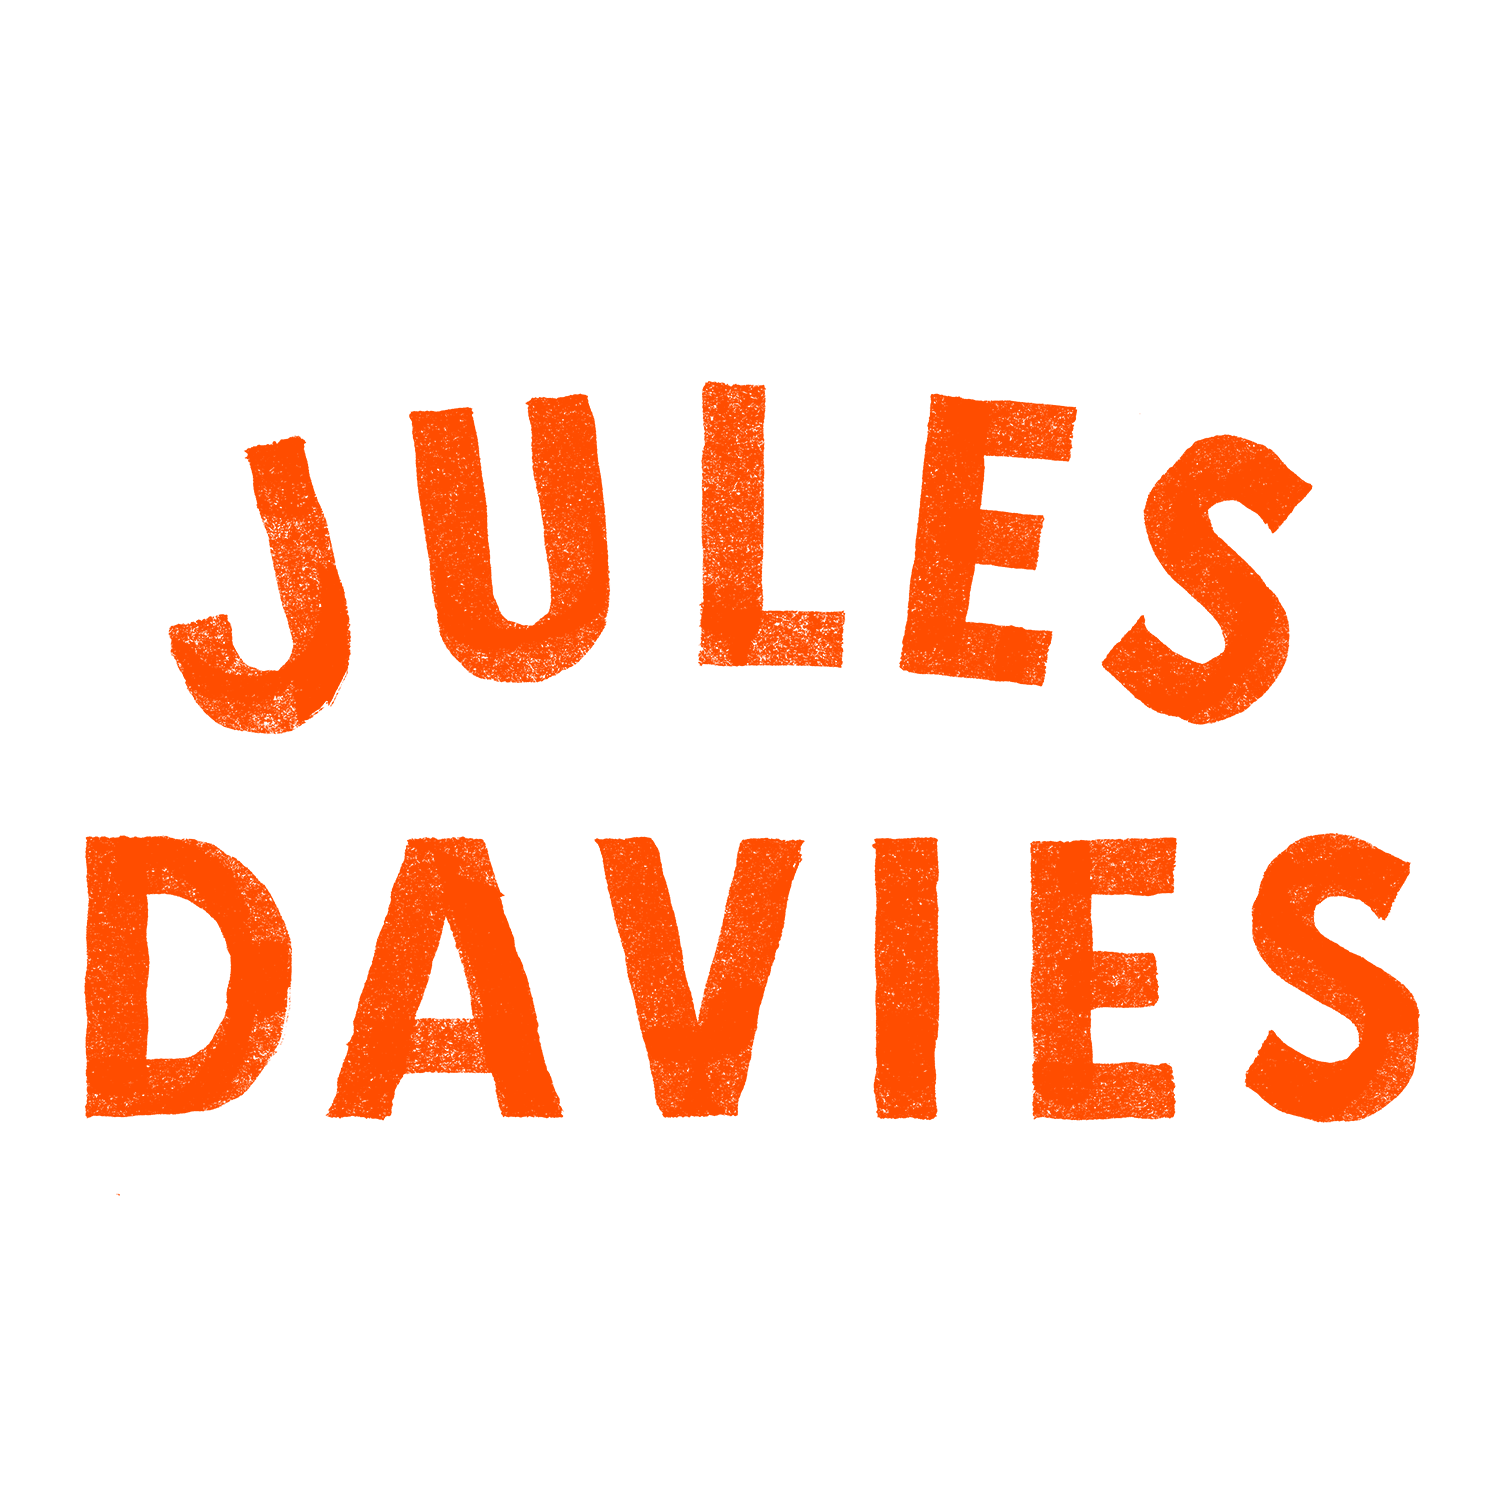 Jules Davies